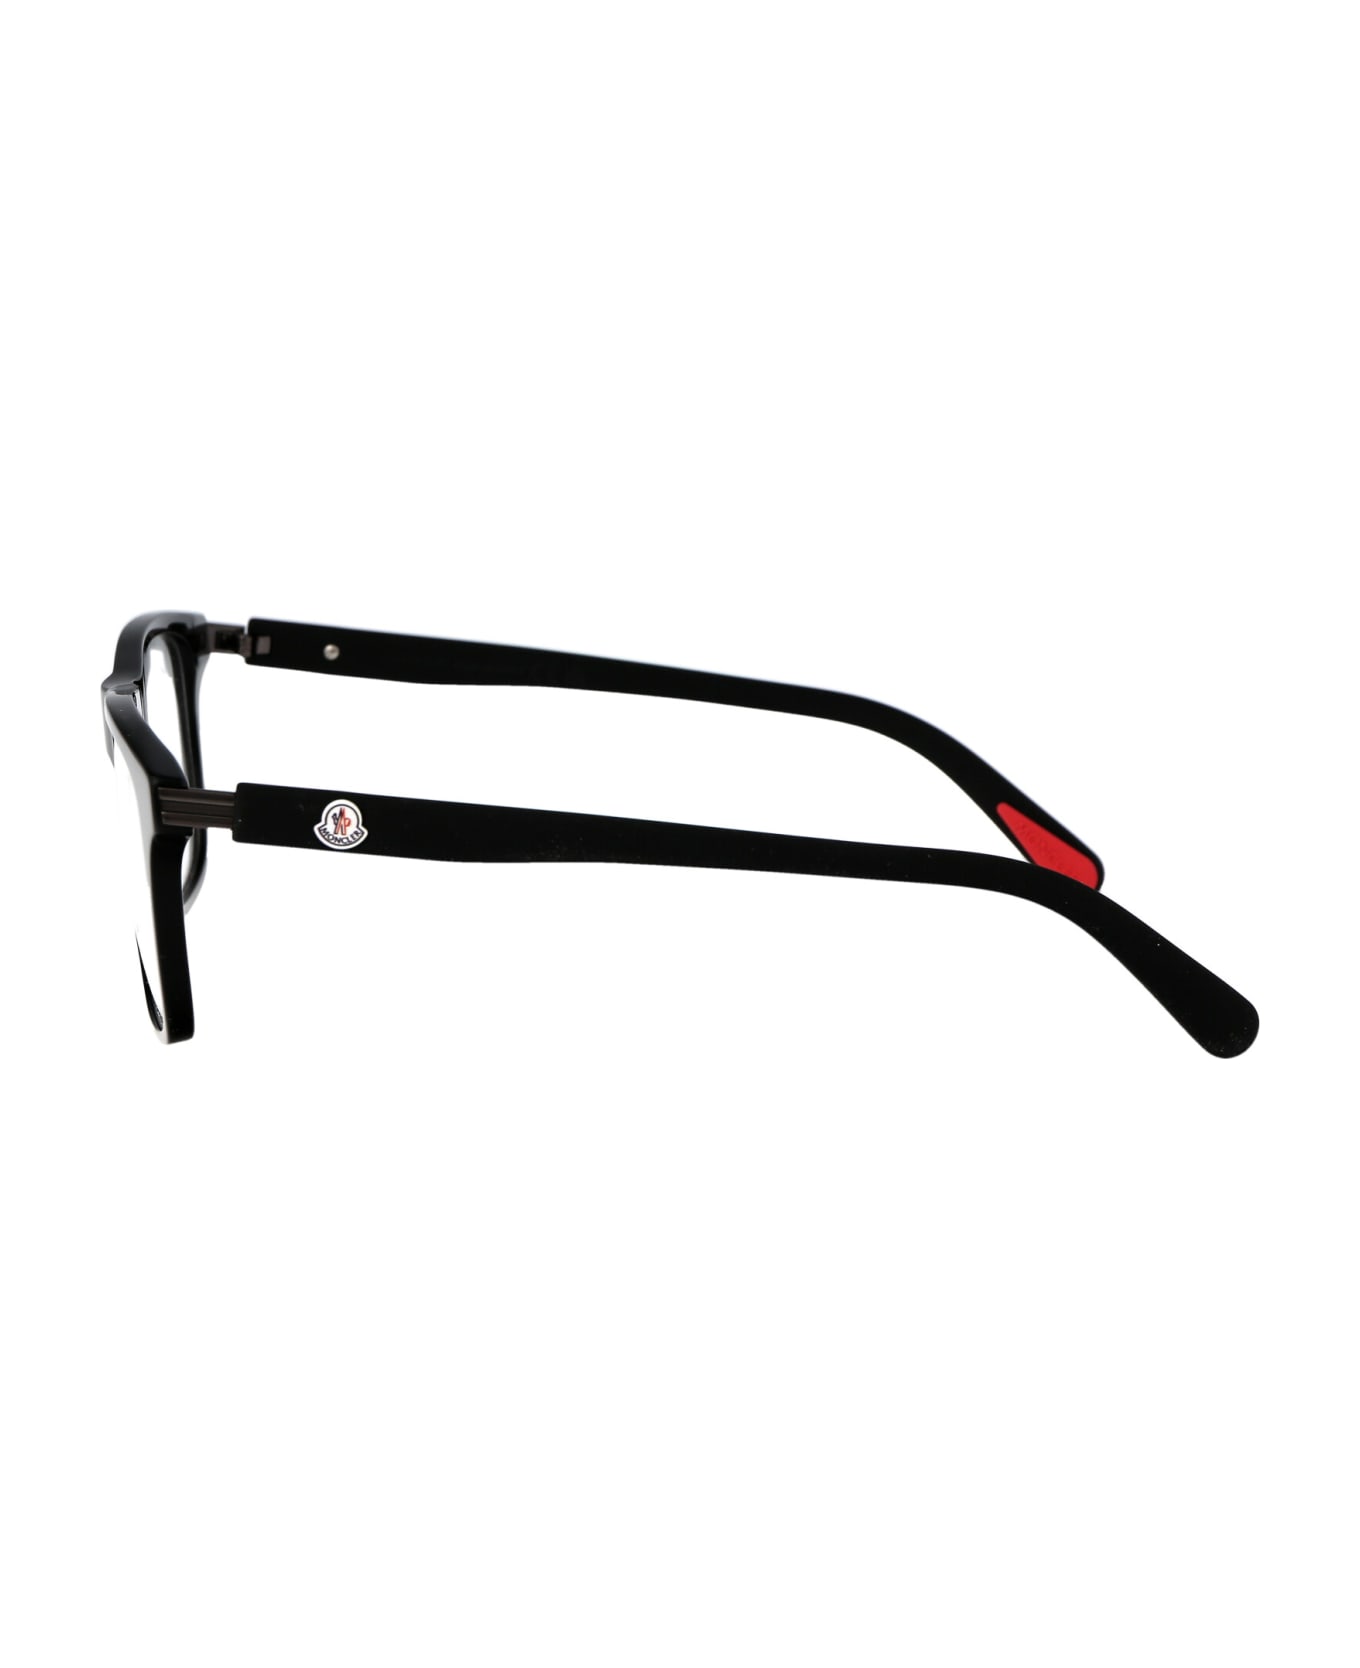 Moncler Eyewear Ml5161 Glasses - 001 Nero Lucido